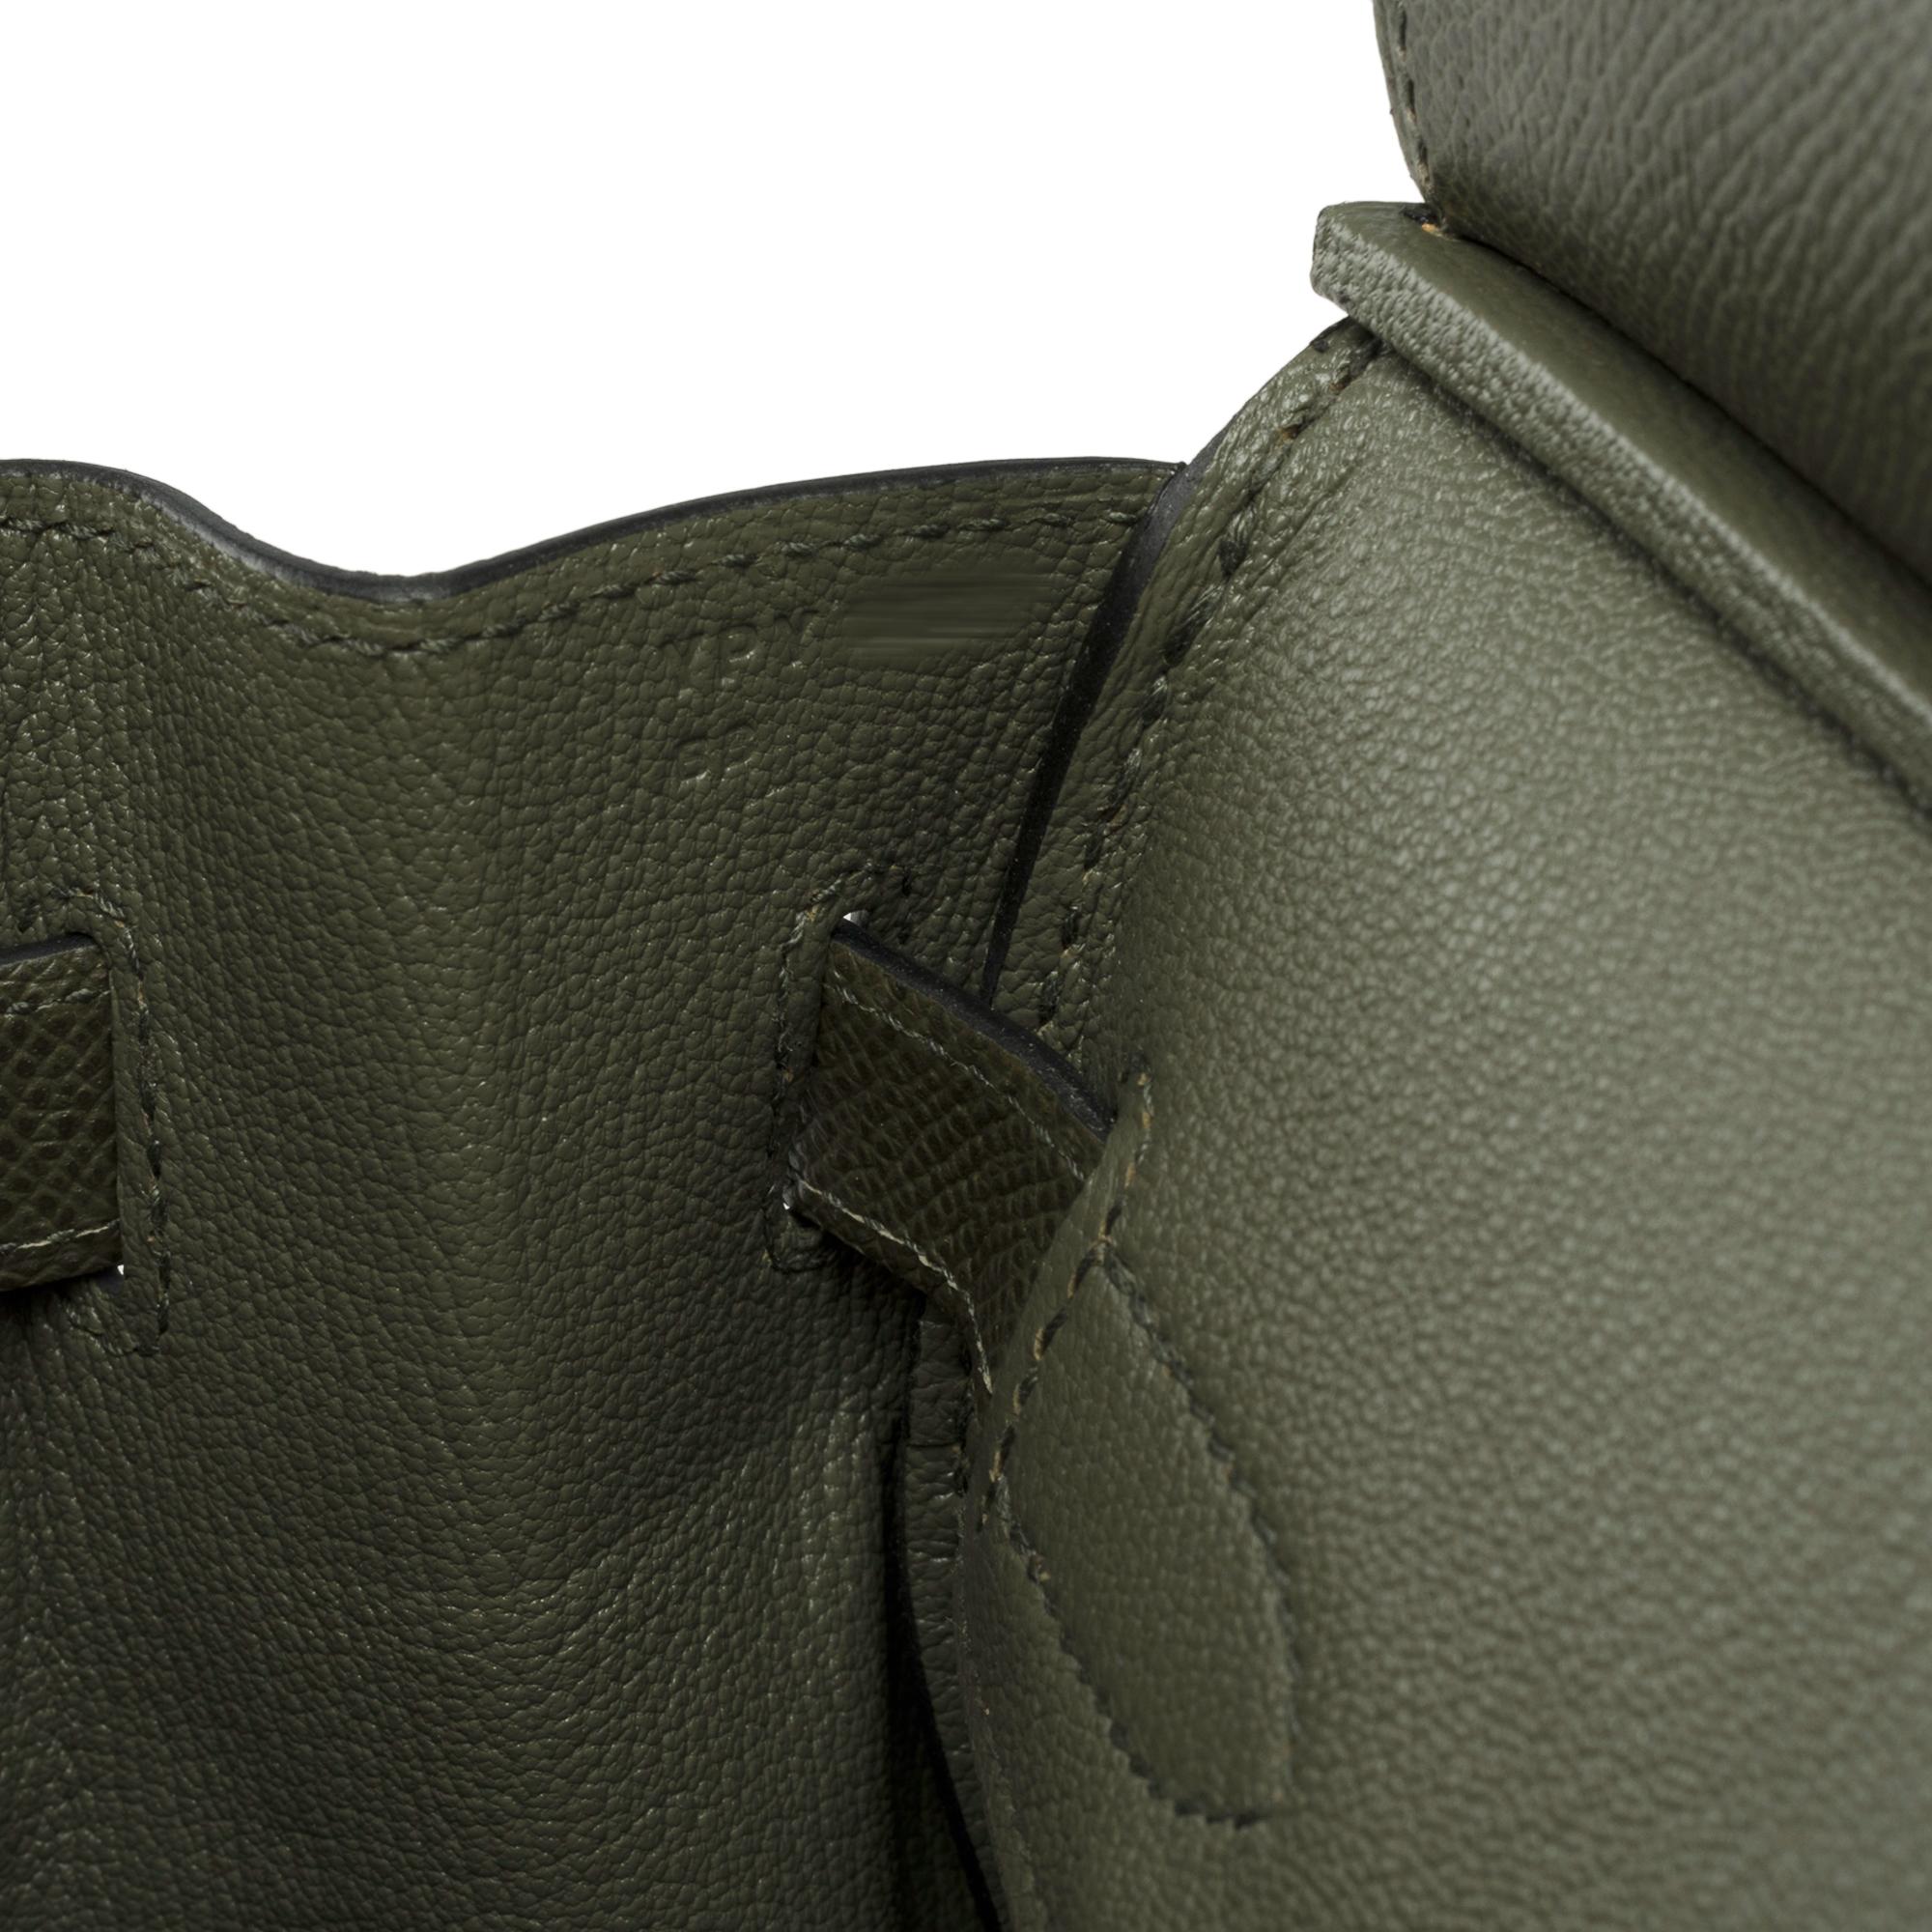 Splendid Hermes Birkin 30 handbag in Vert de Gris Epsom leather, SHW For Sale 2